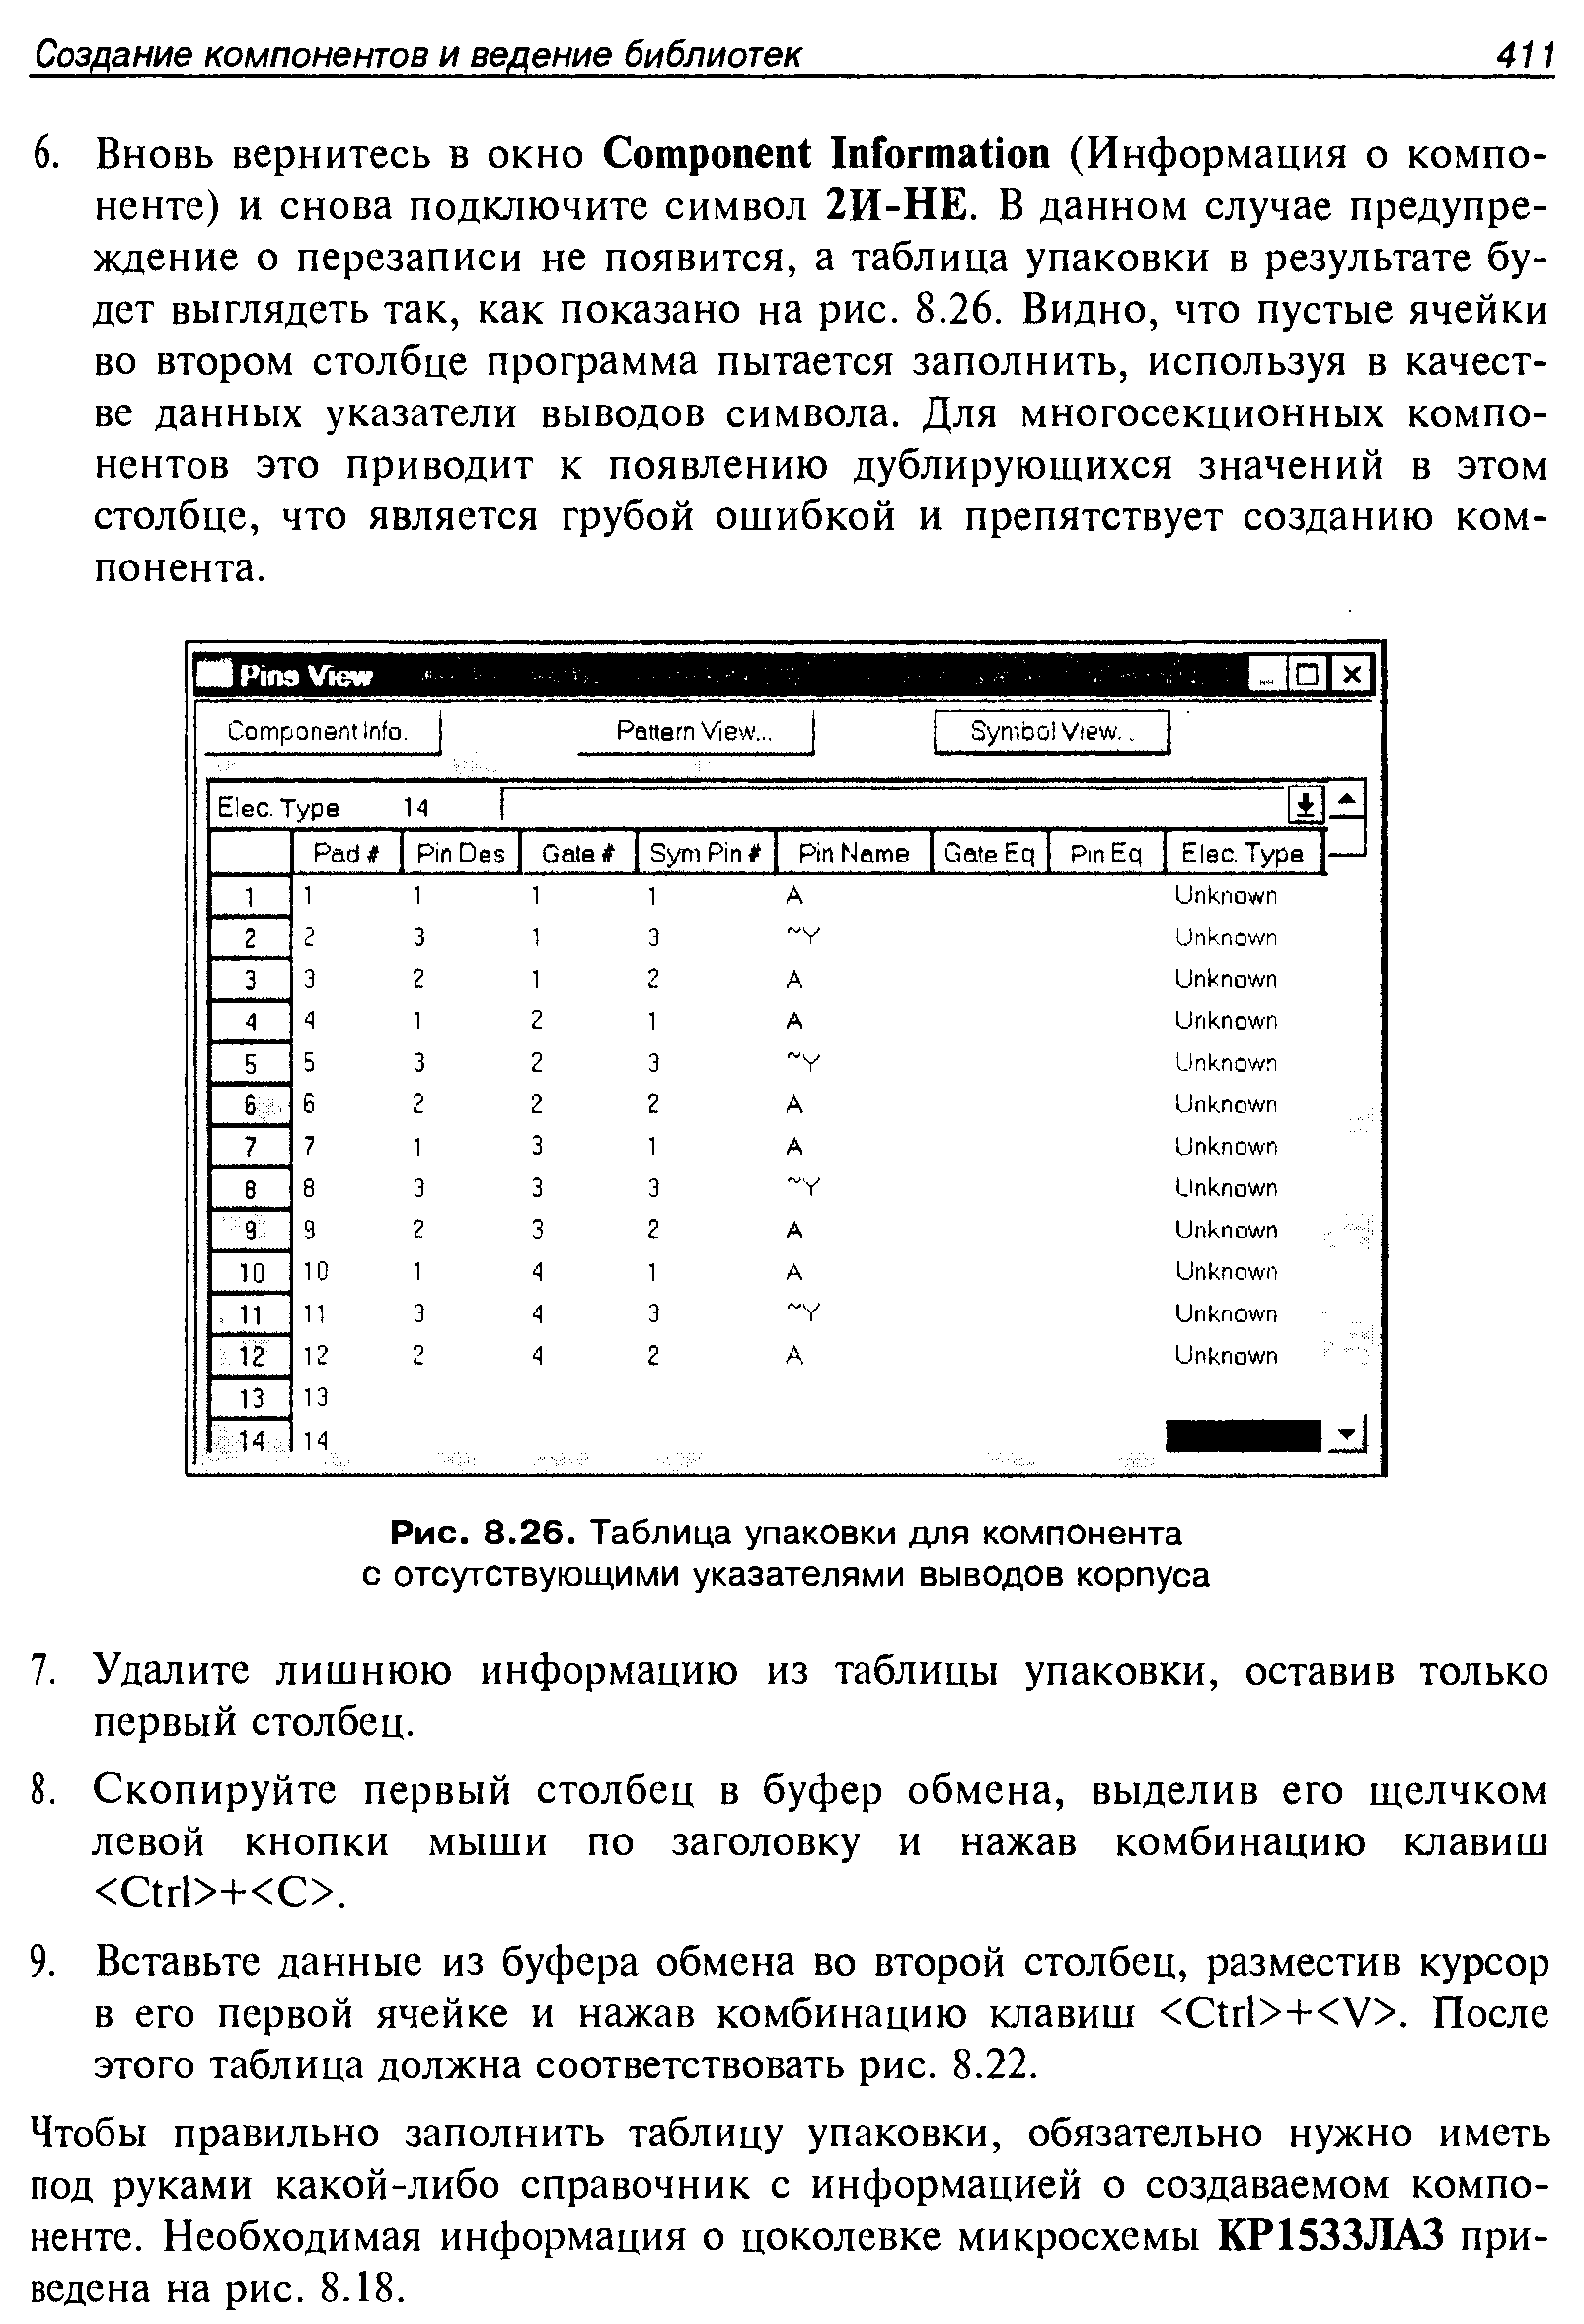 Рис. 8.26. Таблица упаковки для компонента с отсутствующими указателями выводов корпуса
